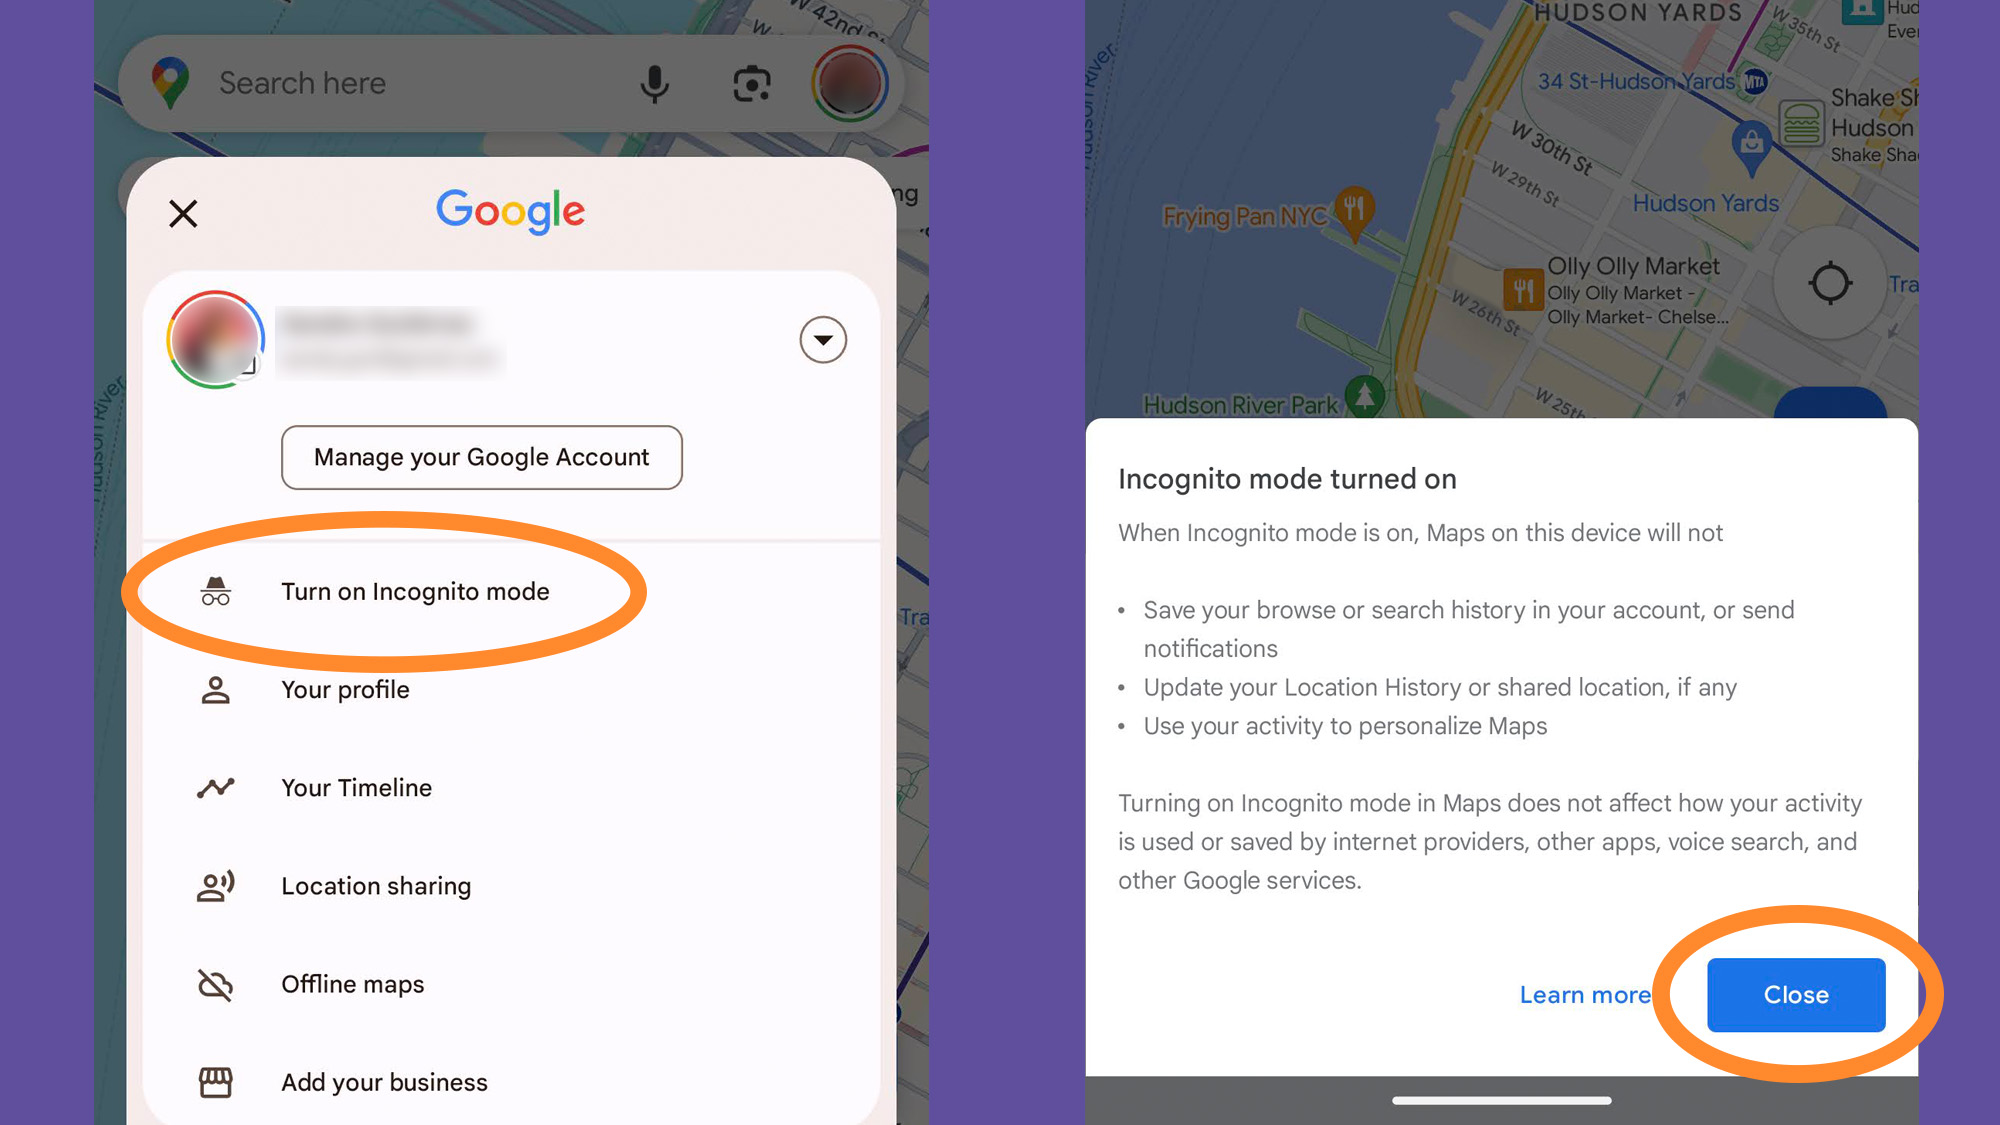 Google Maps' incognito mode menu